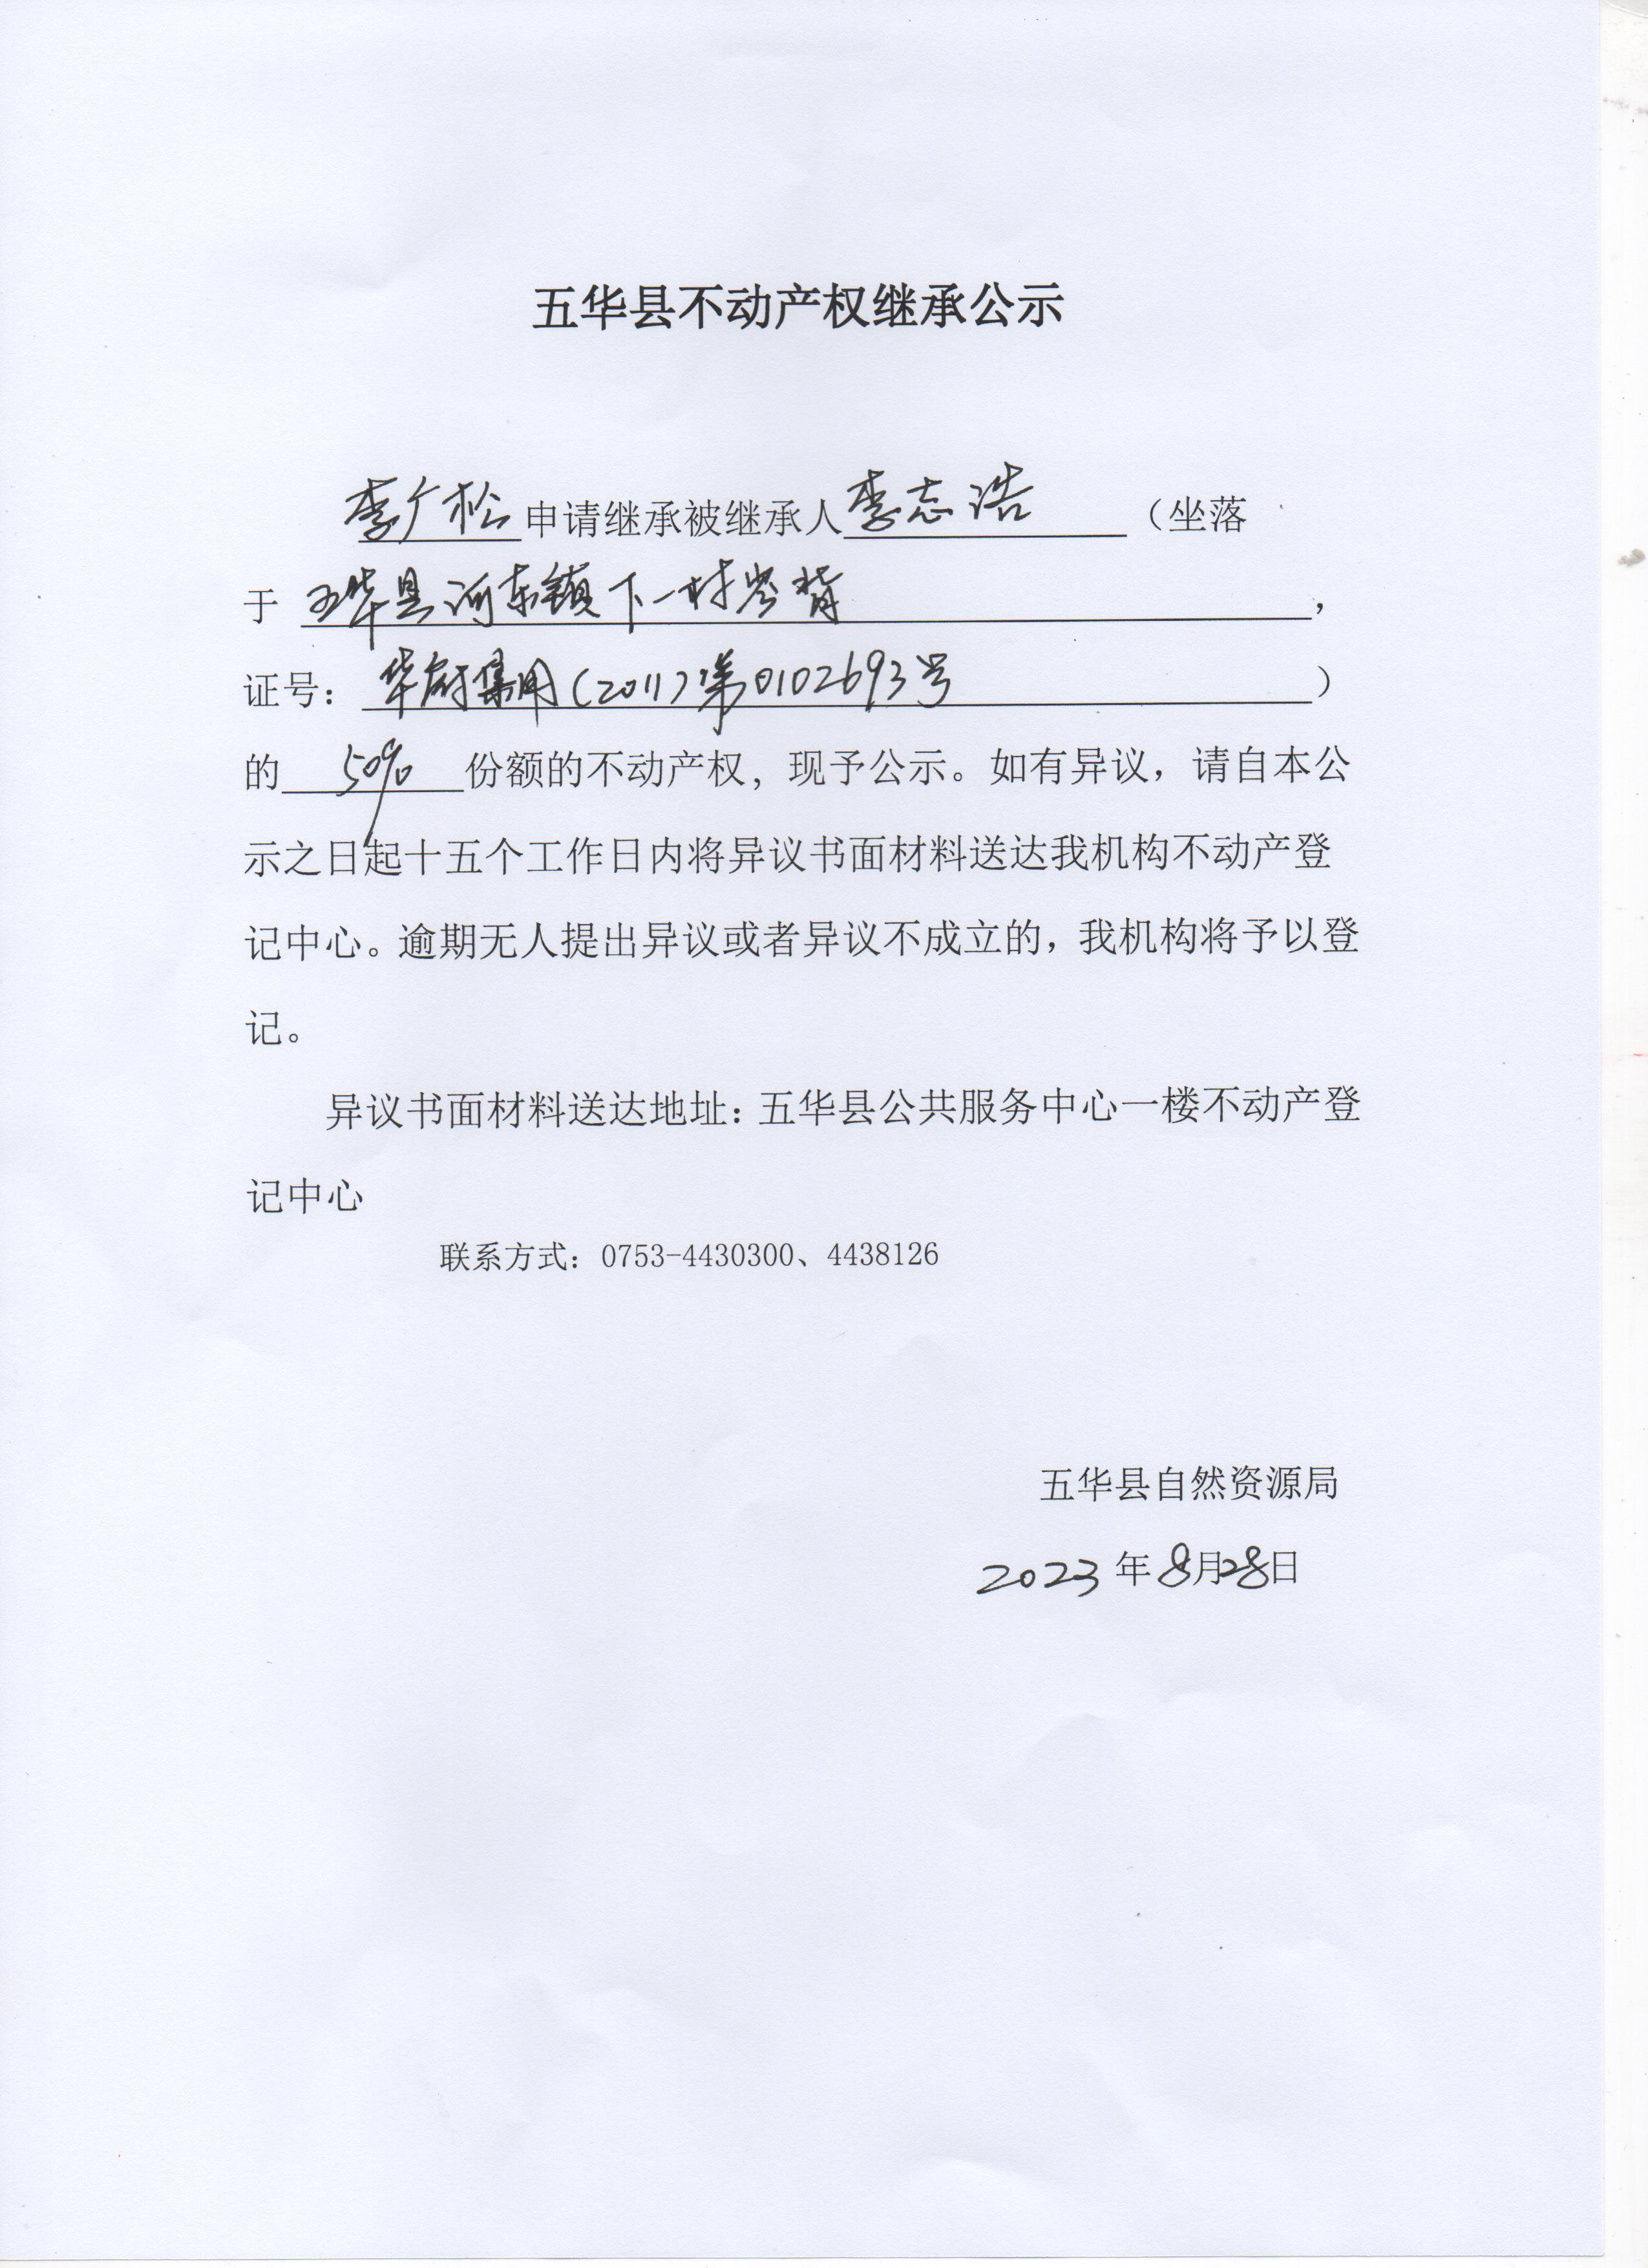 五华县不动产权继承公示（李志浩）2 001.jpg